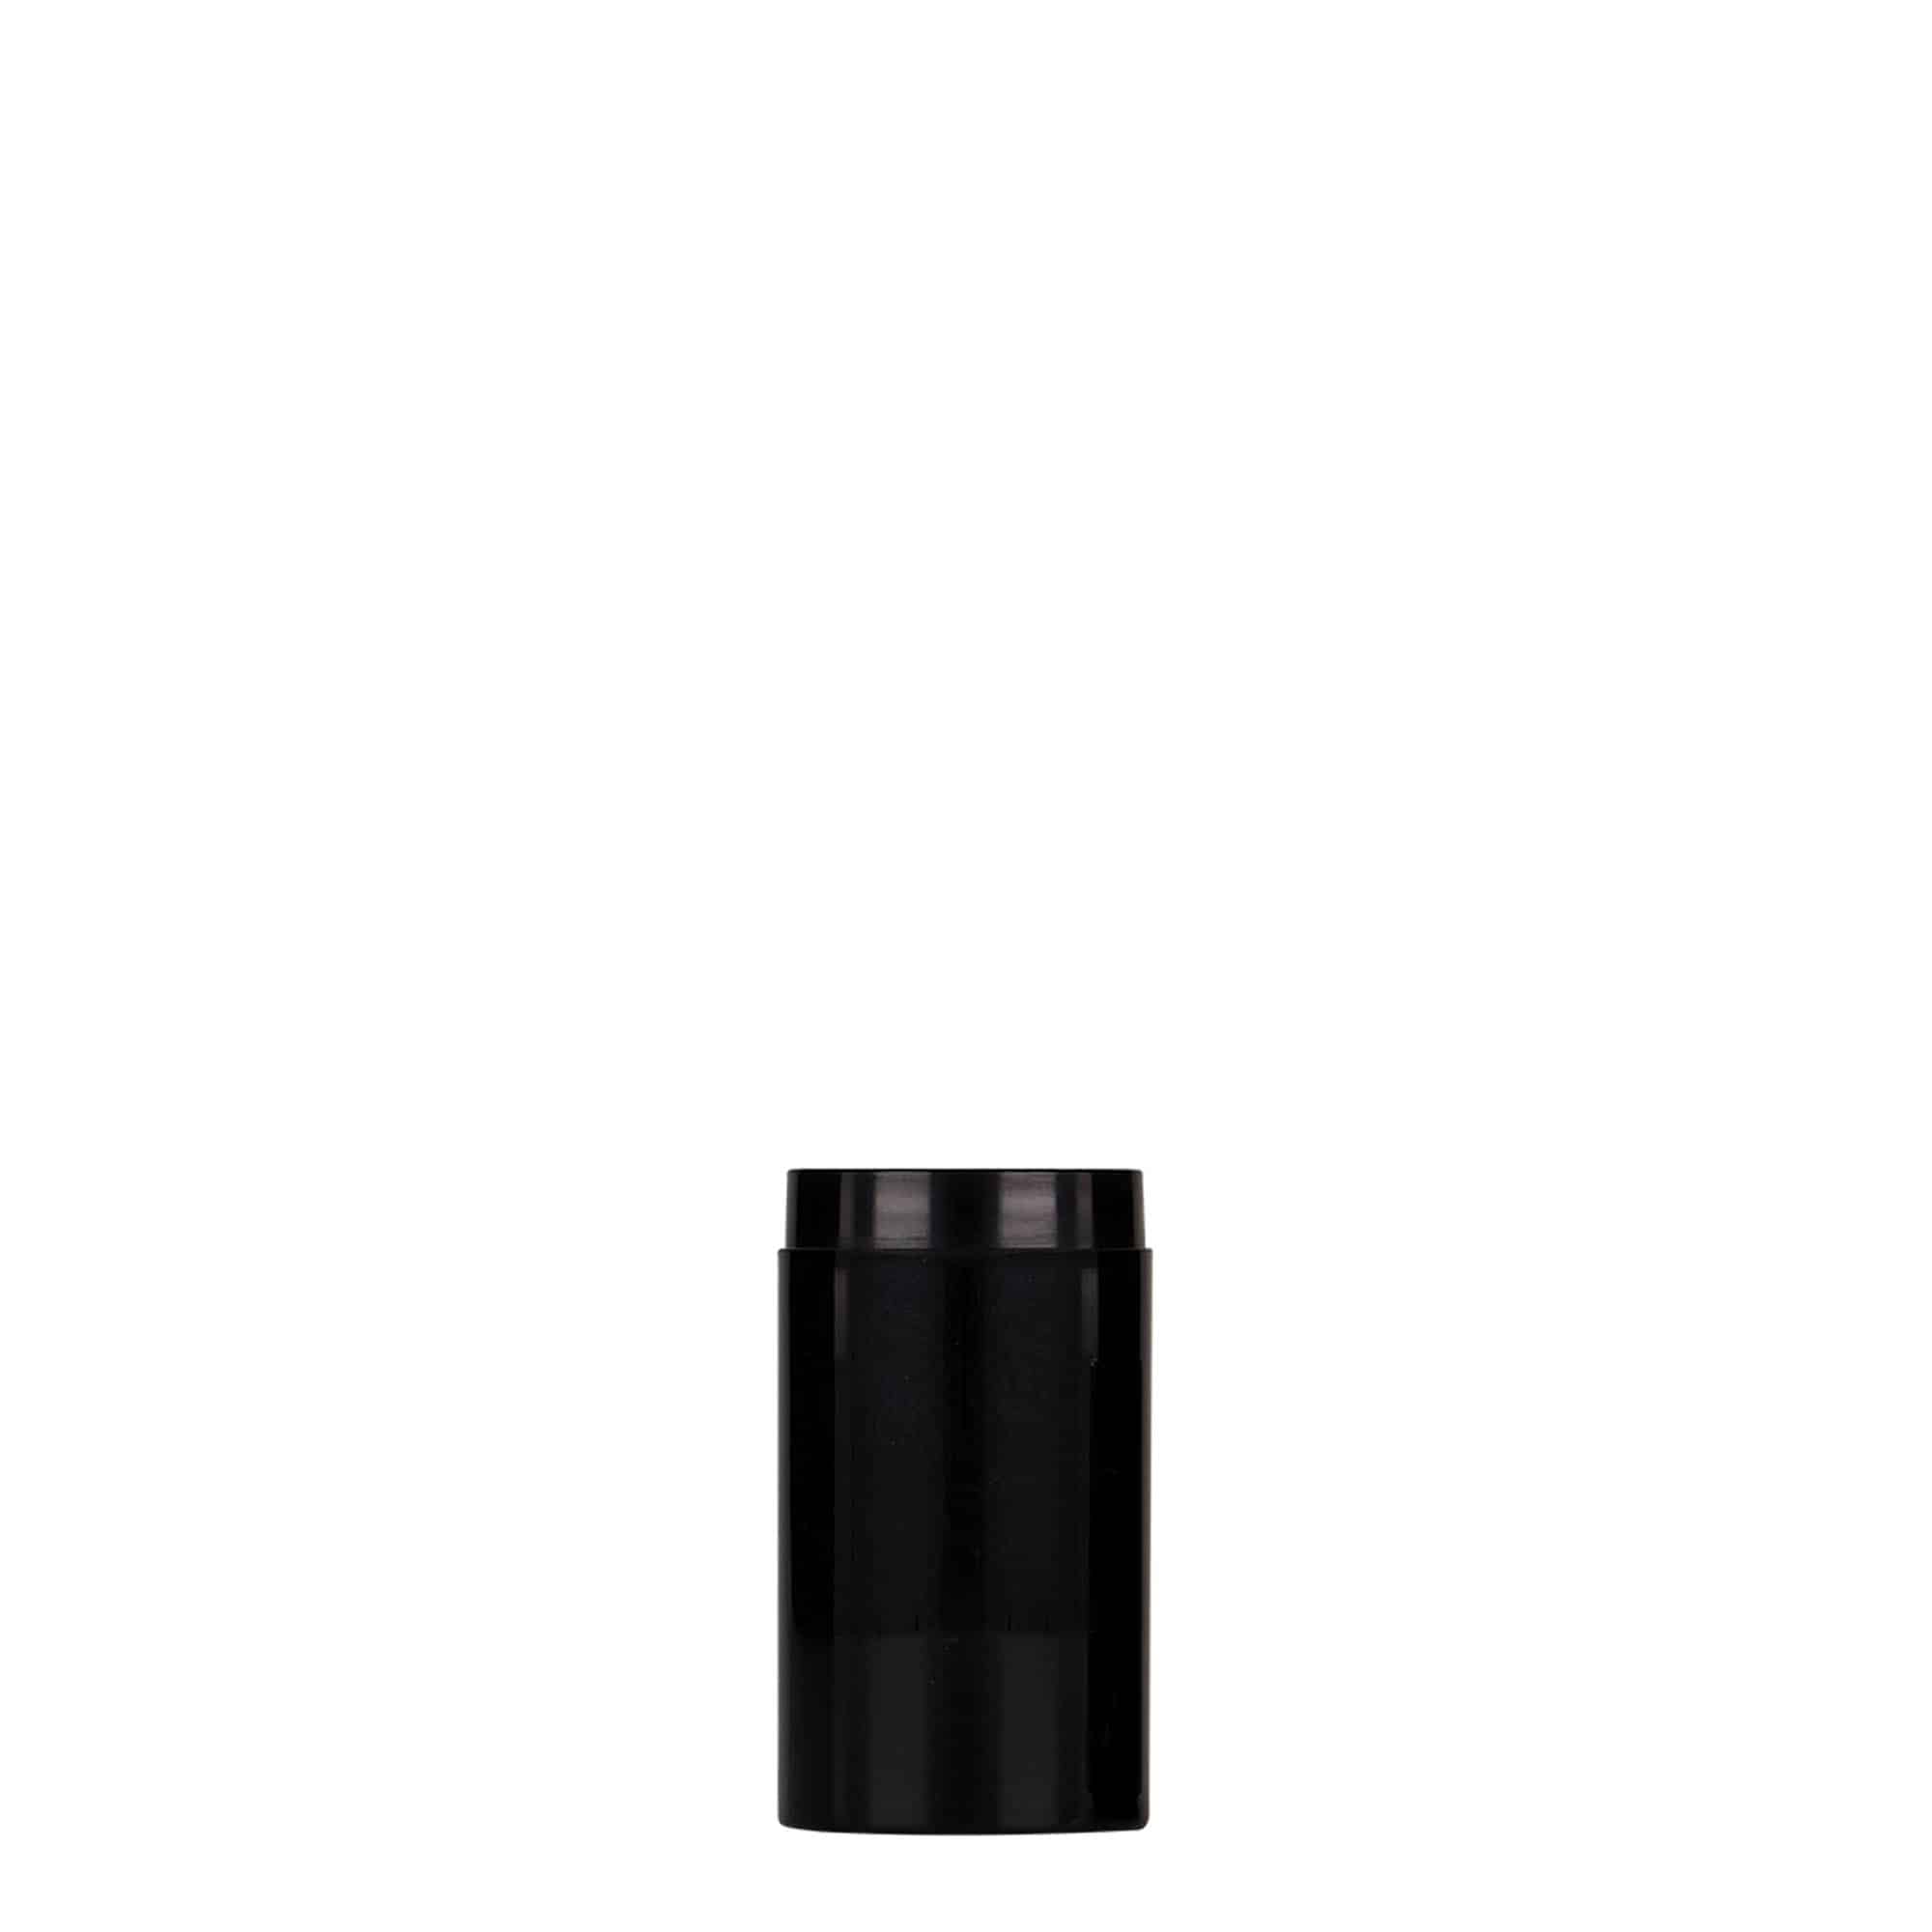 Bezvzduchový dávkovač 15 ml 'Micro', plast PP, černý